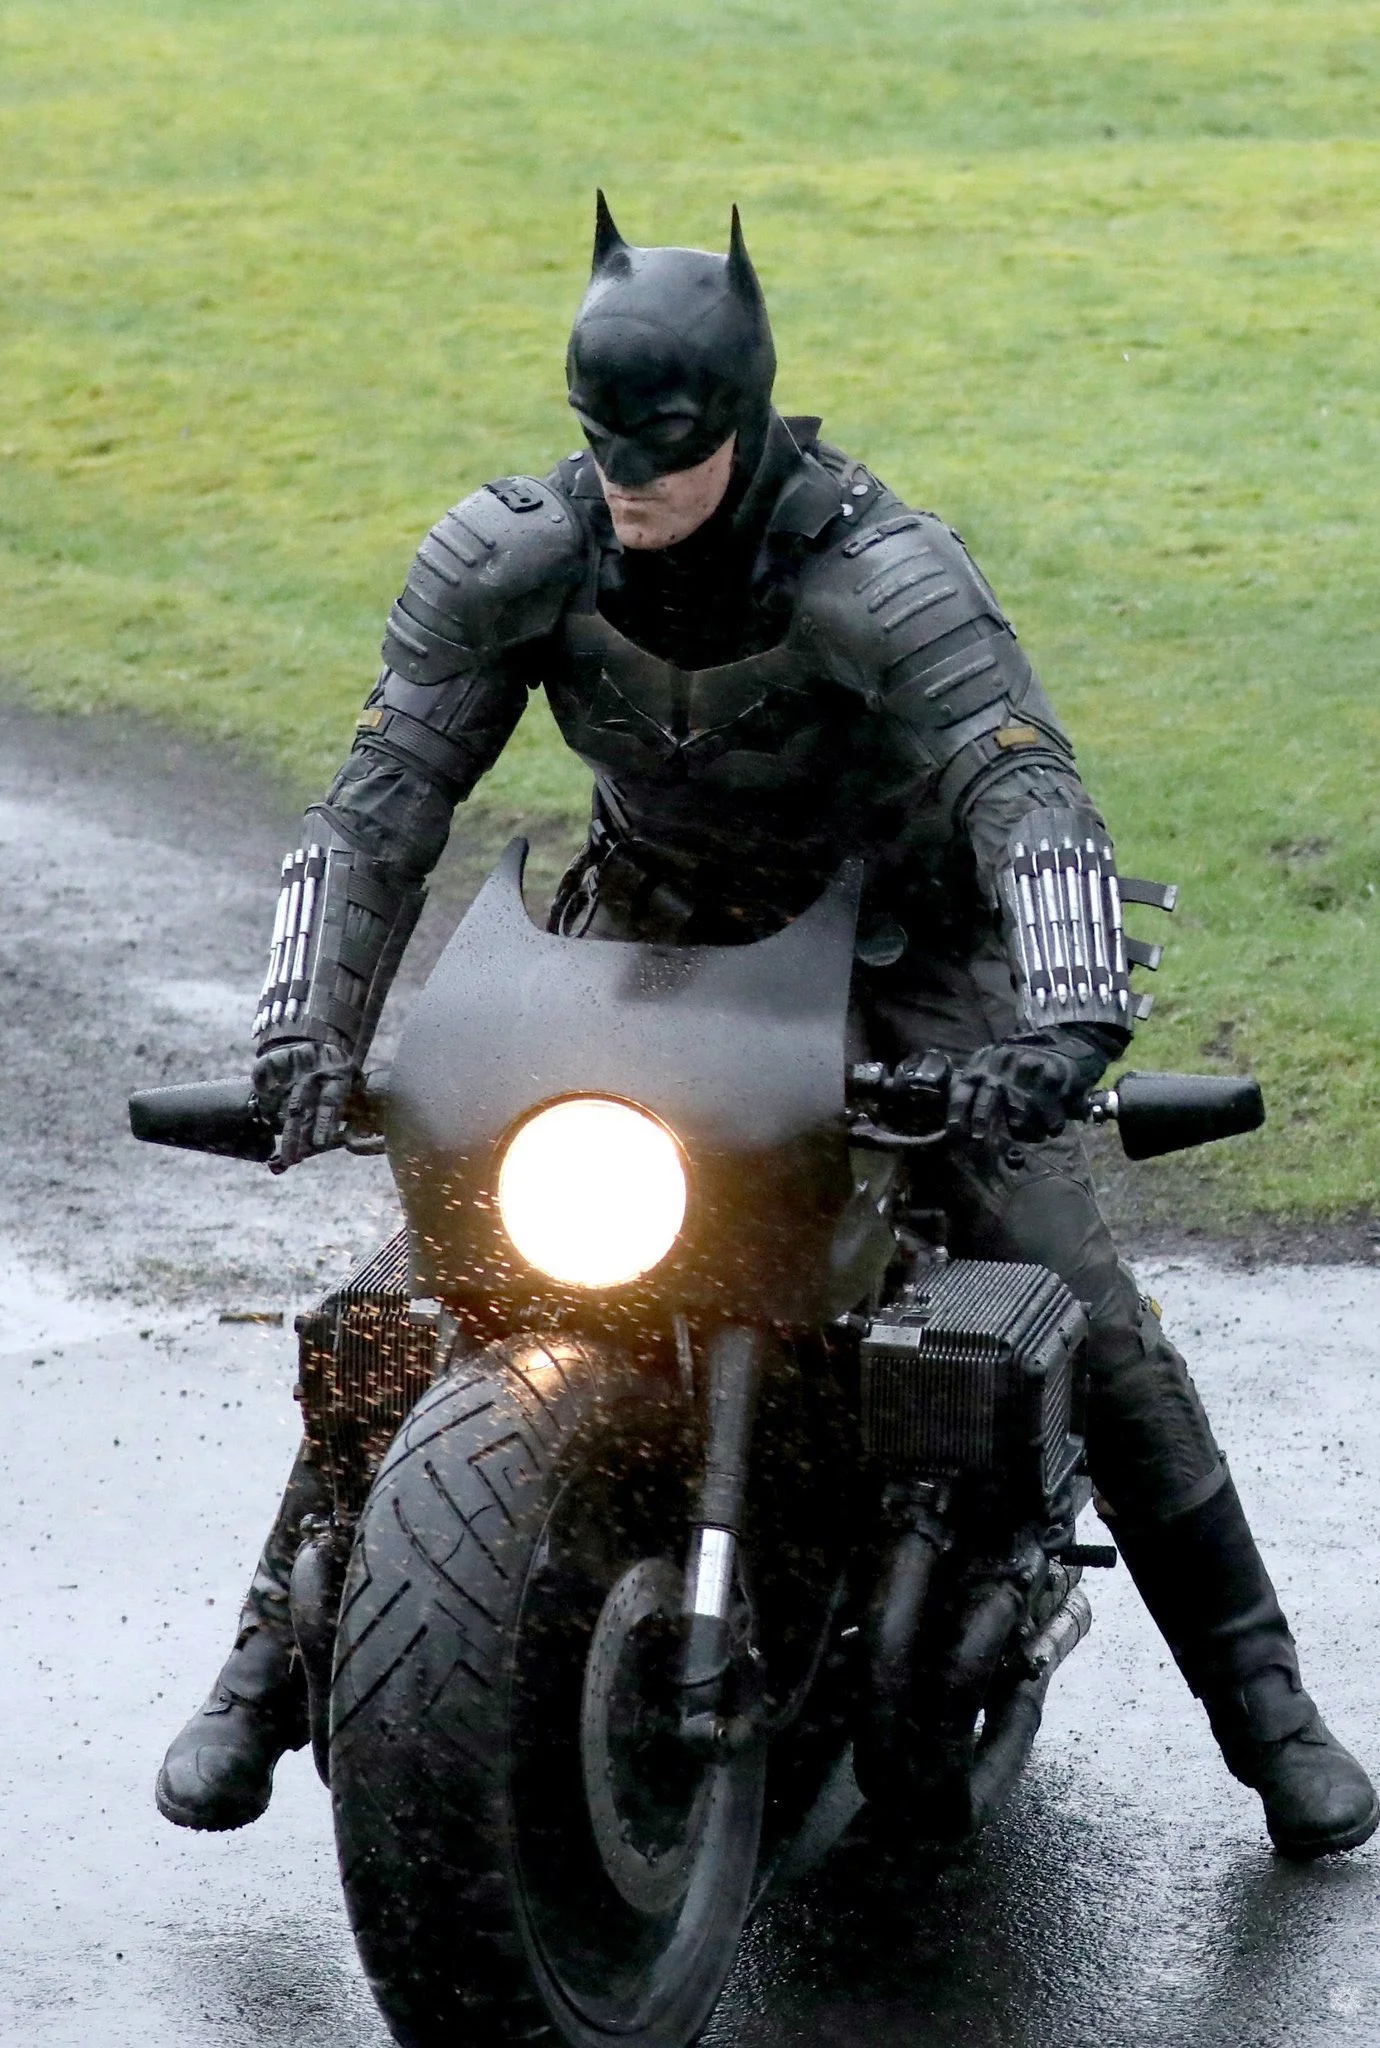 Теперь можно рассмотреть костюм Бэтмена из будущего фильма - фото 2